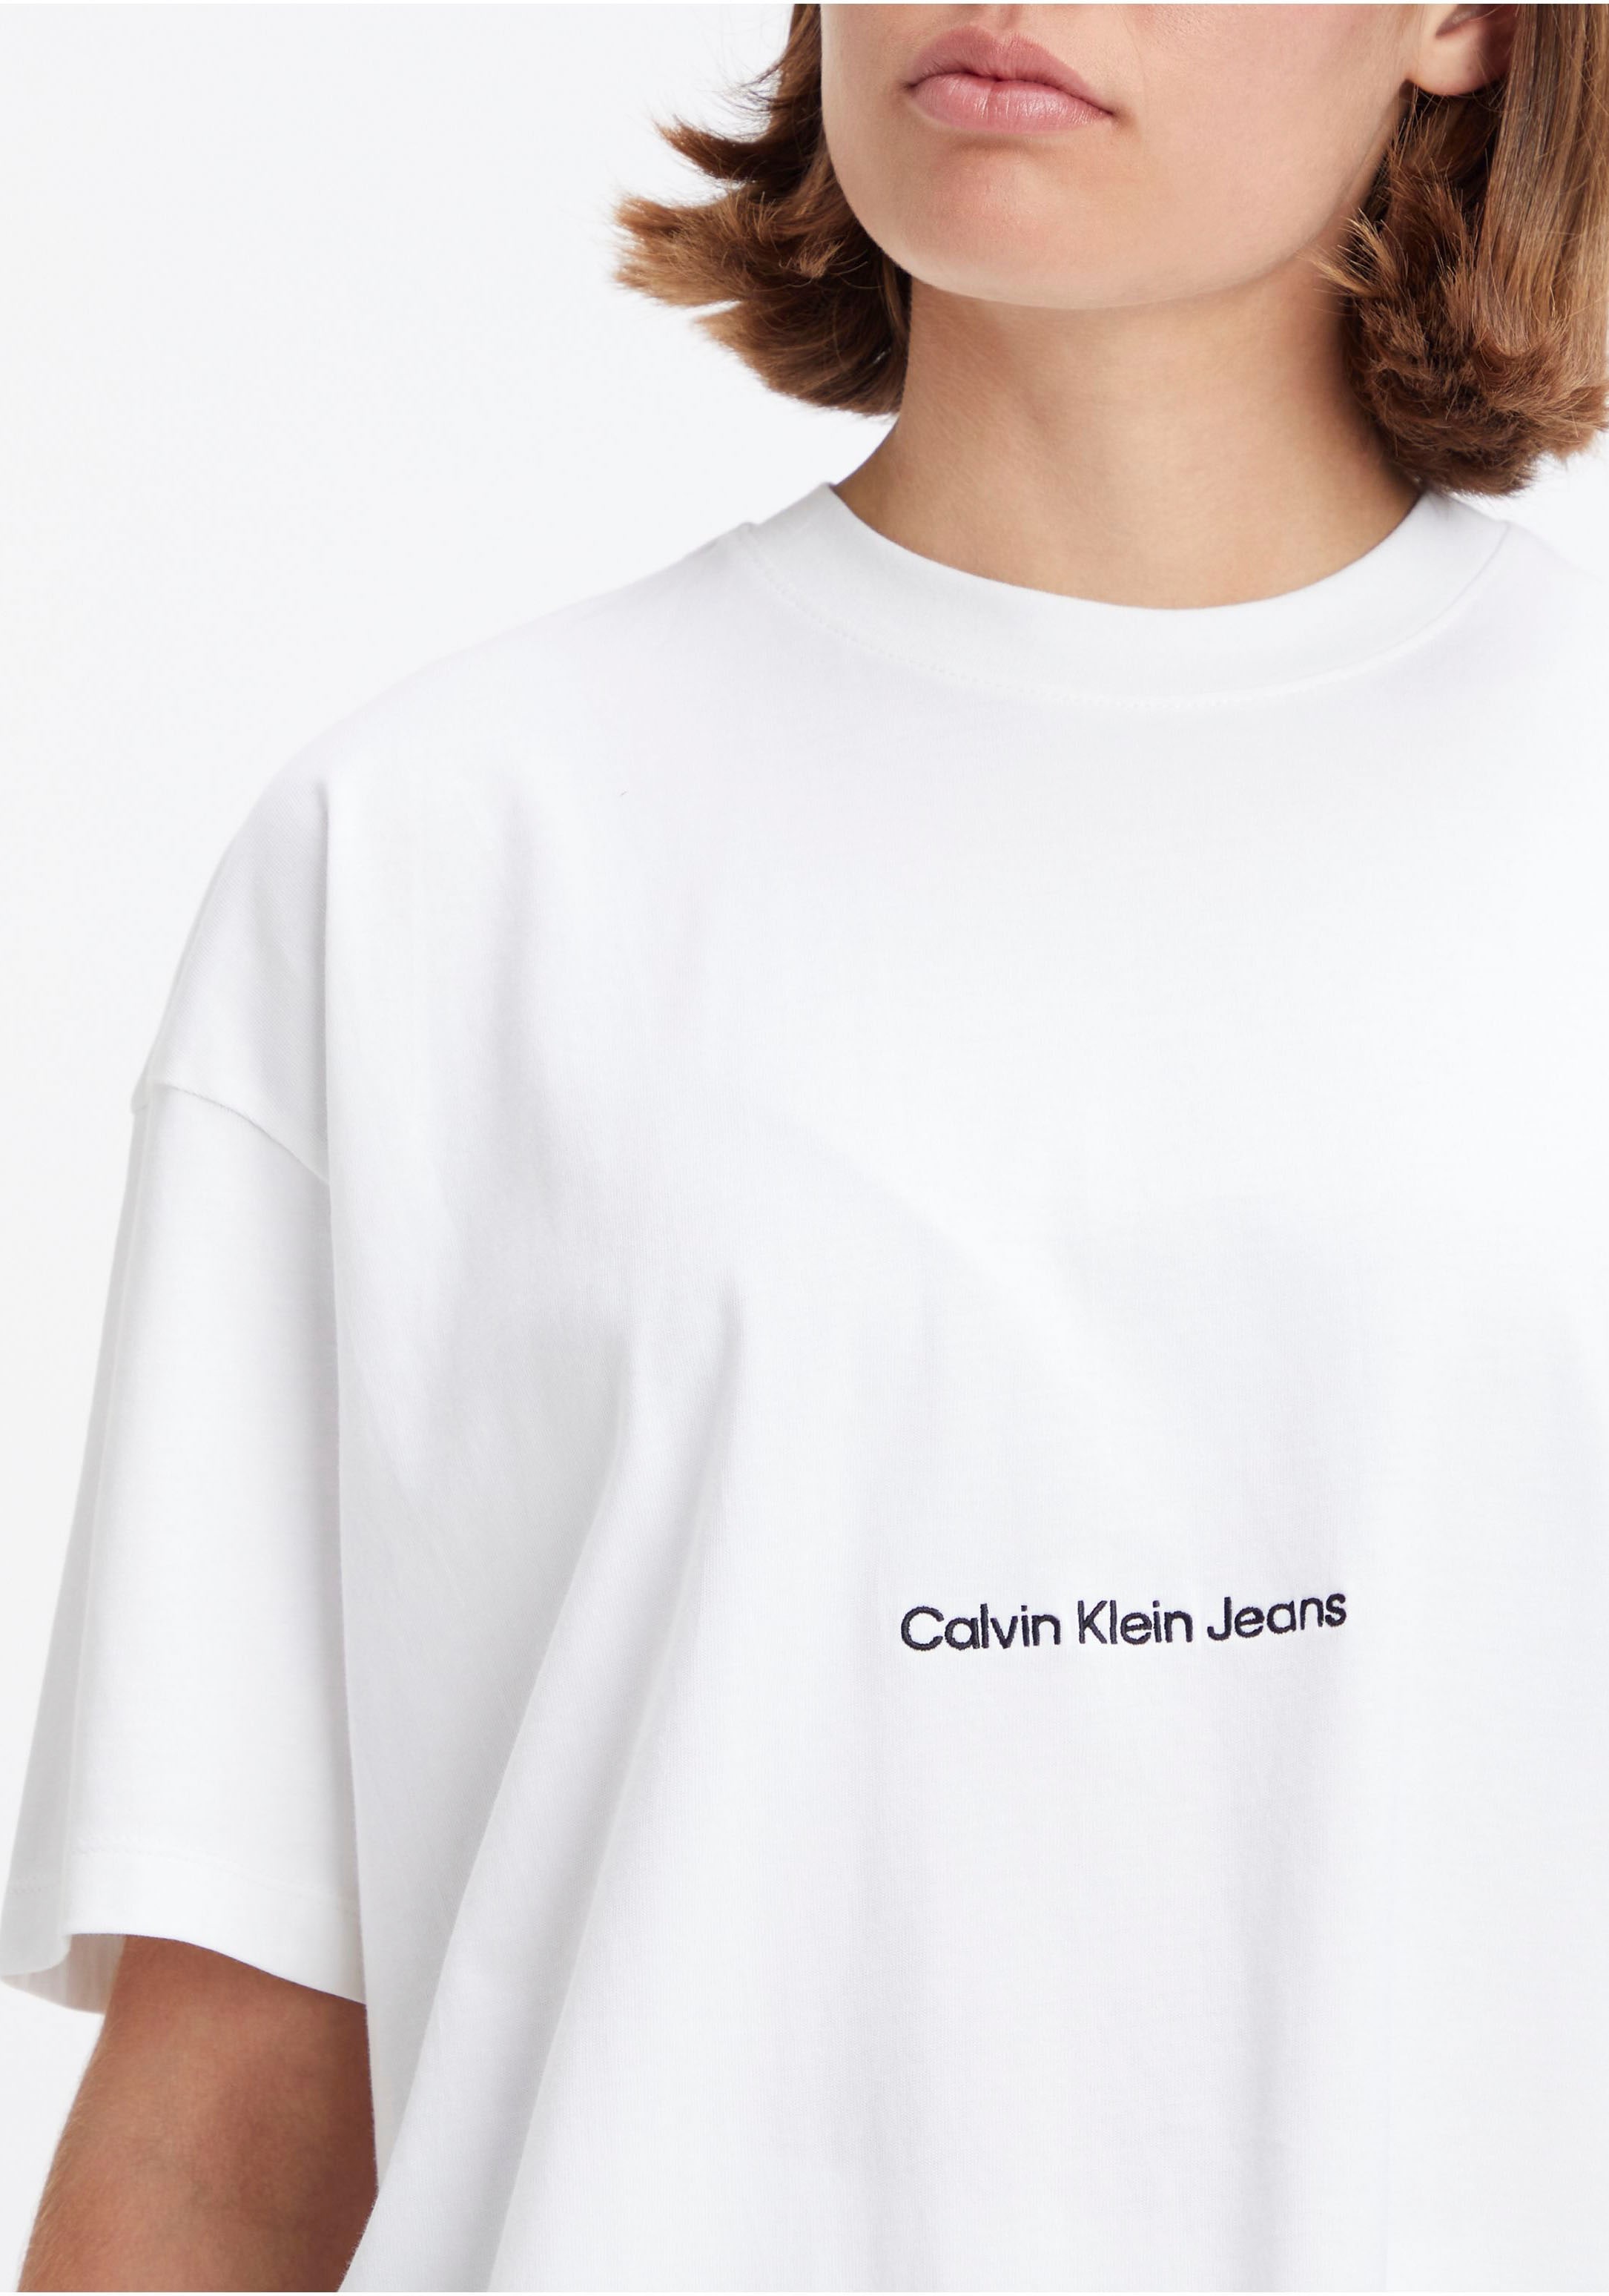 T-Shirt, Calvin in Klein Jeans OTTO Shop Online im Oversized-Passform